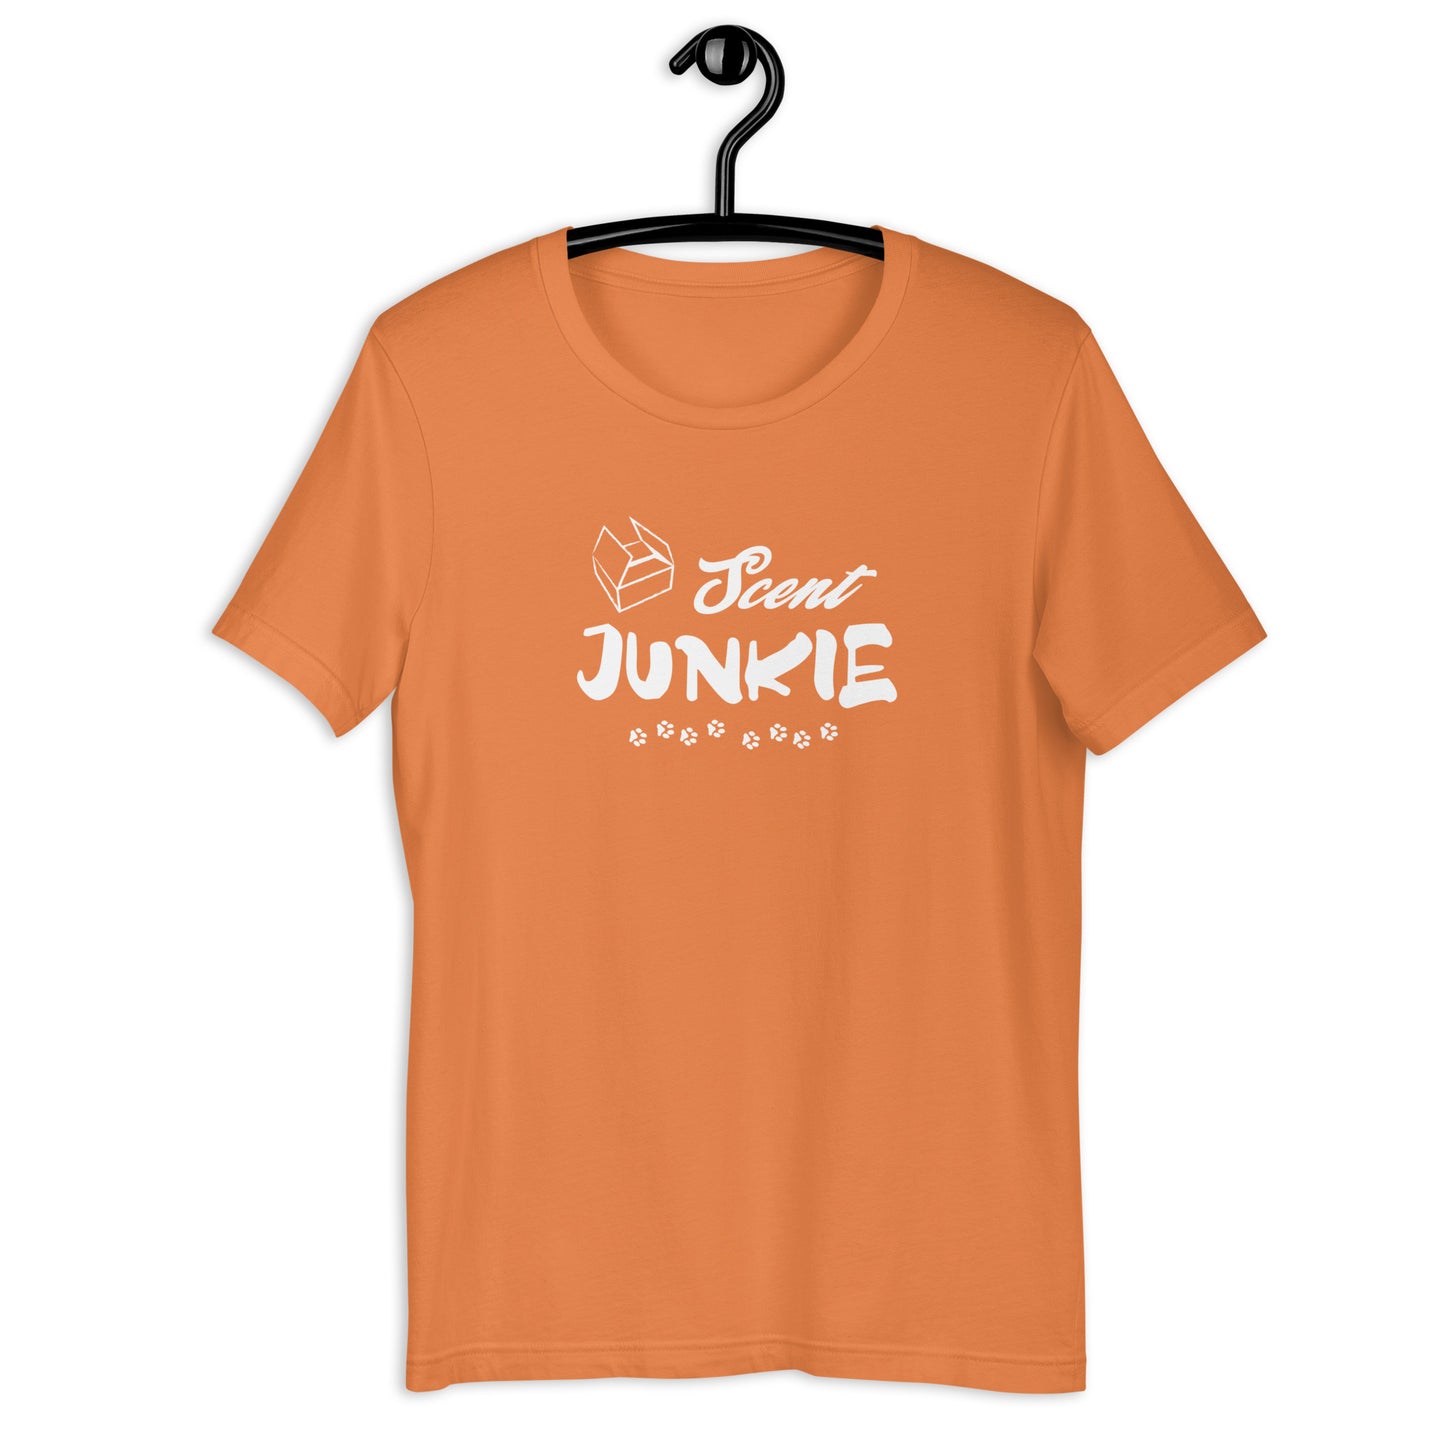 SCENT JUNKIE - Unisex t-shirt